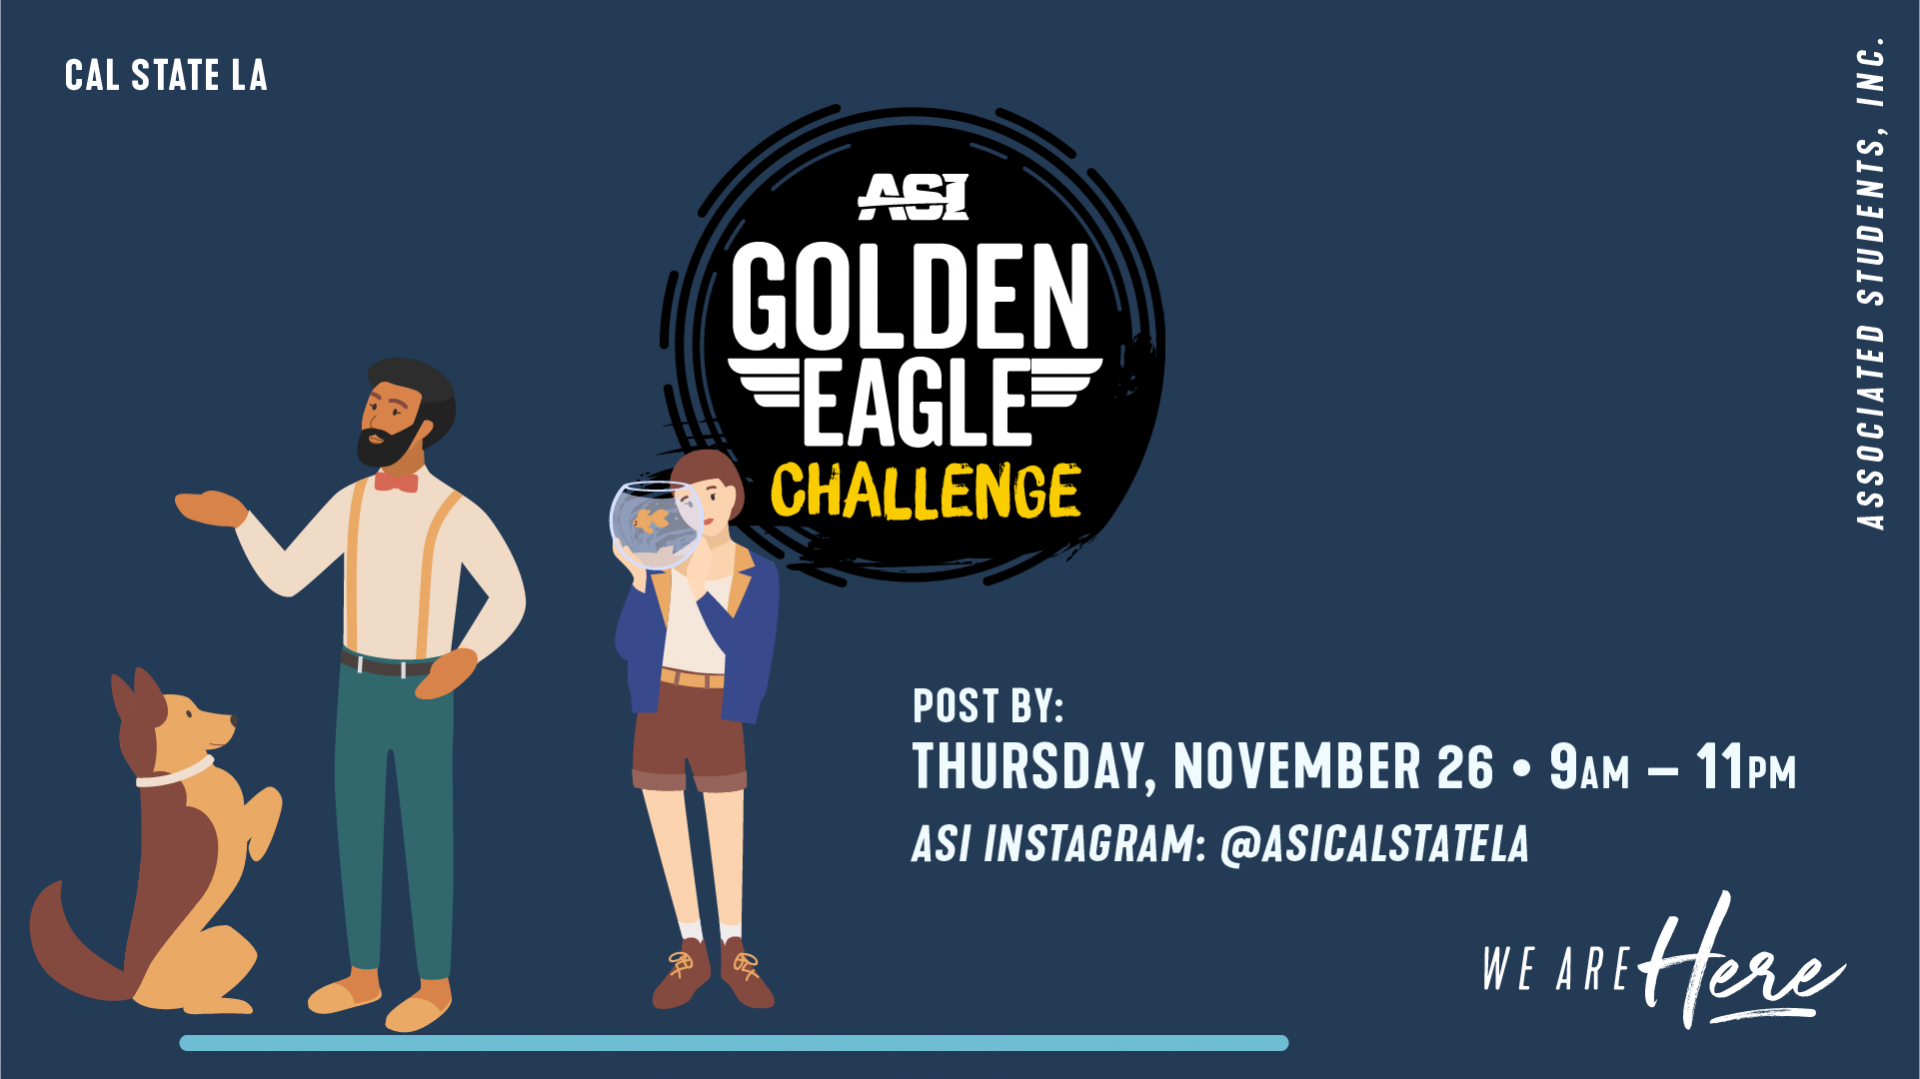 Golden Eagle Challenge: Pet Photo